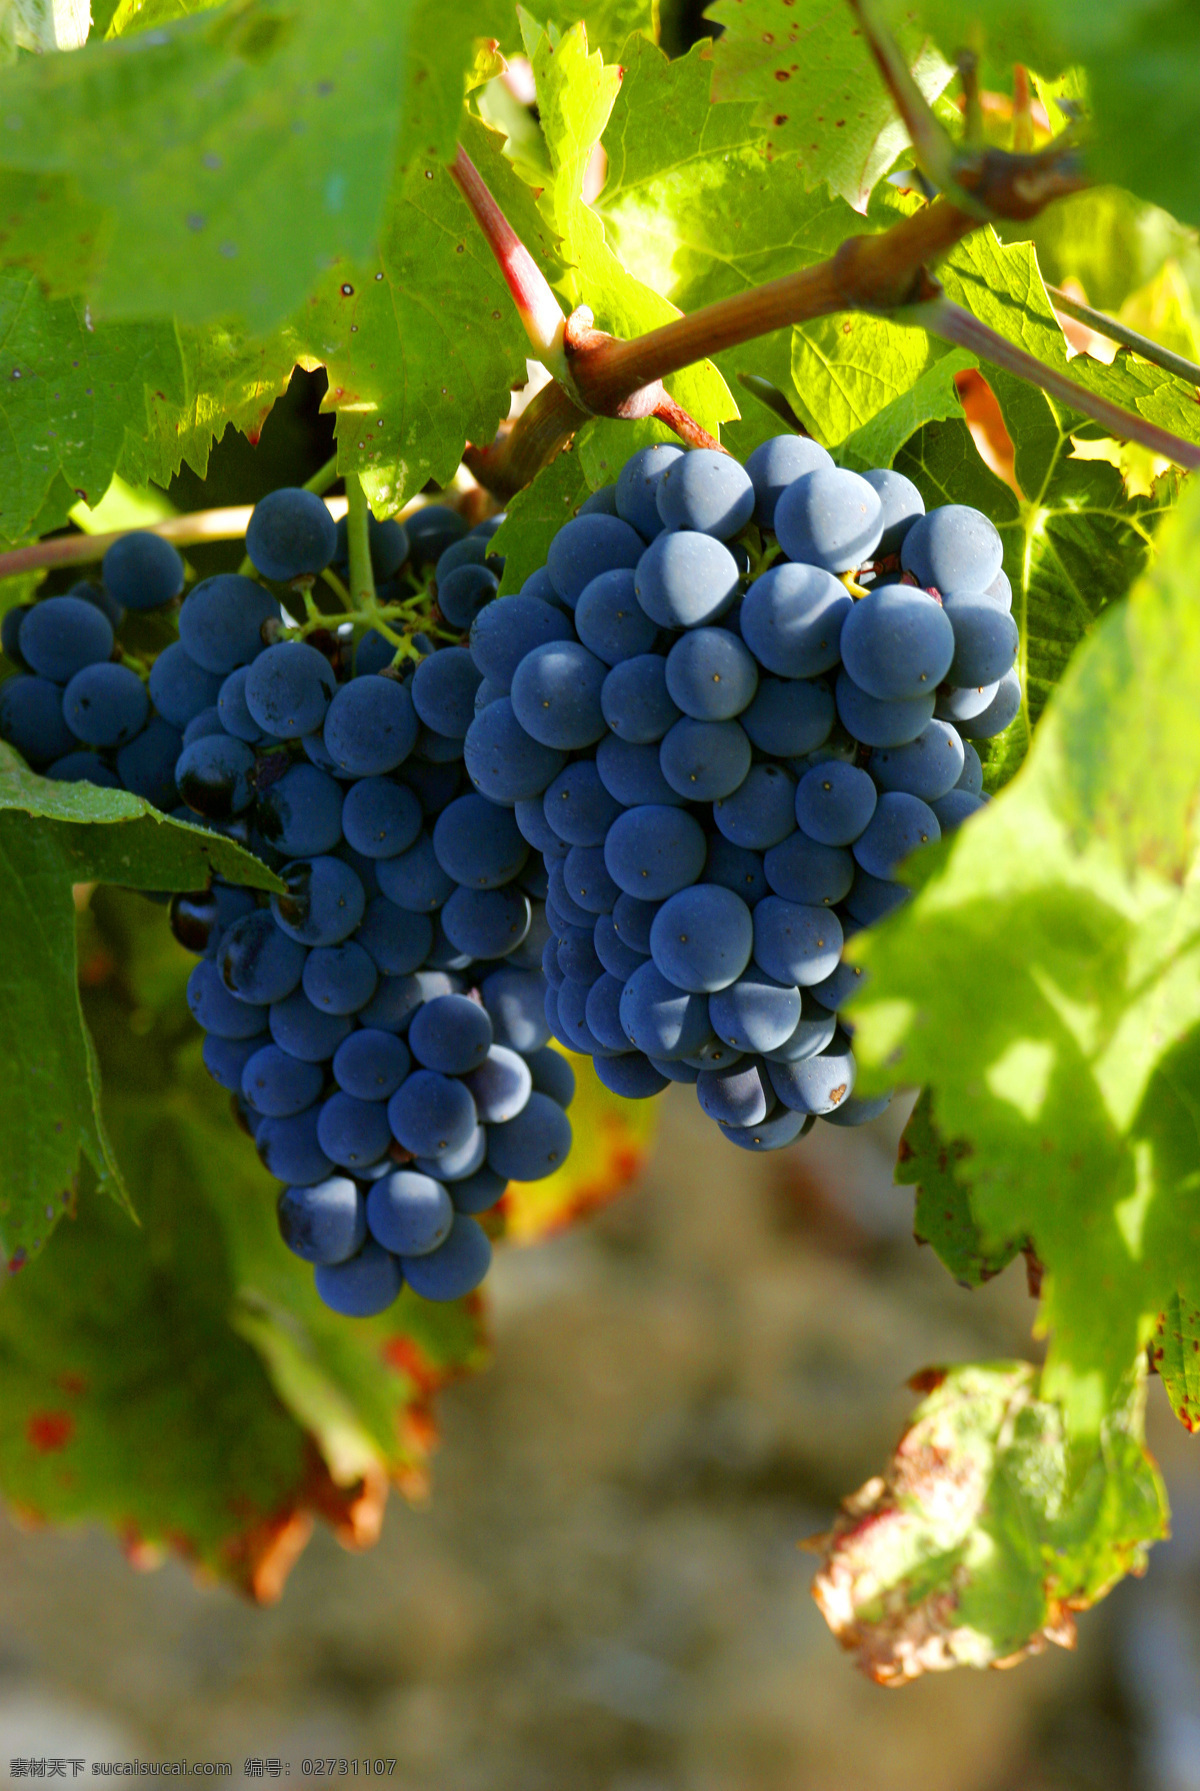 葡萄园 葡萄园风景 法国葡萄园 法国酒庄 葡萄种植 自然景观 田园风光 生物世界 水果